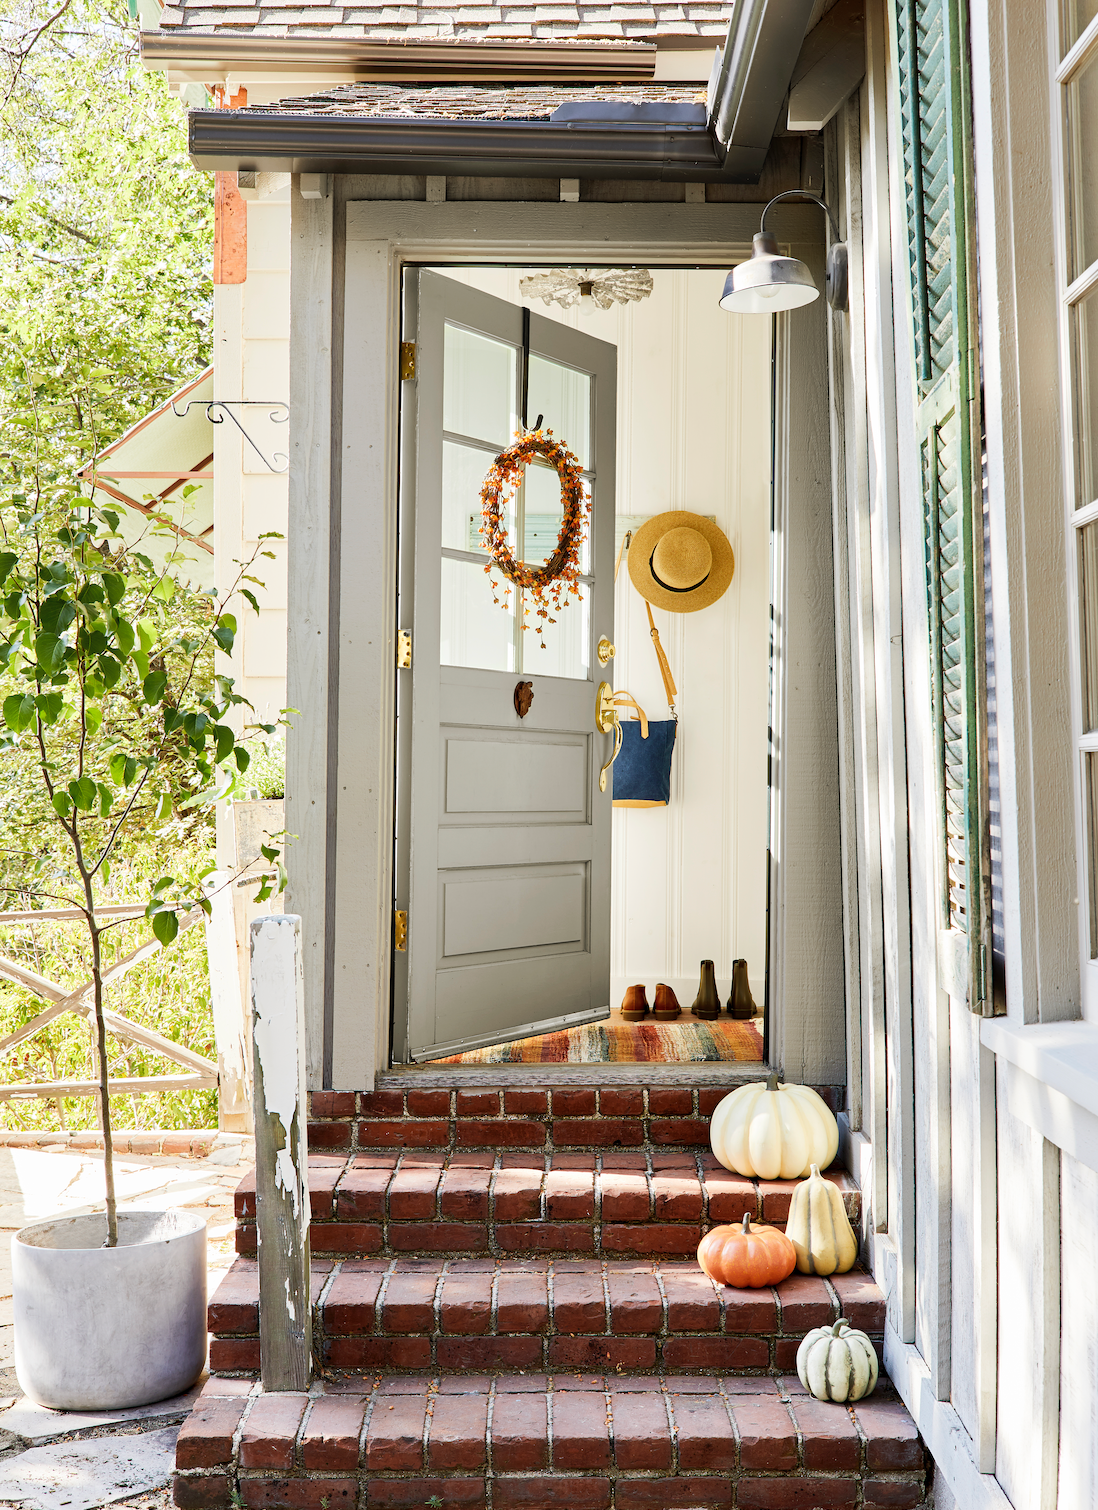 idéias simples de decoração de portas de outono